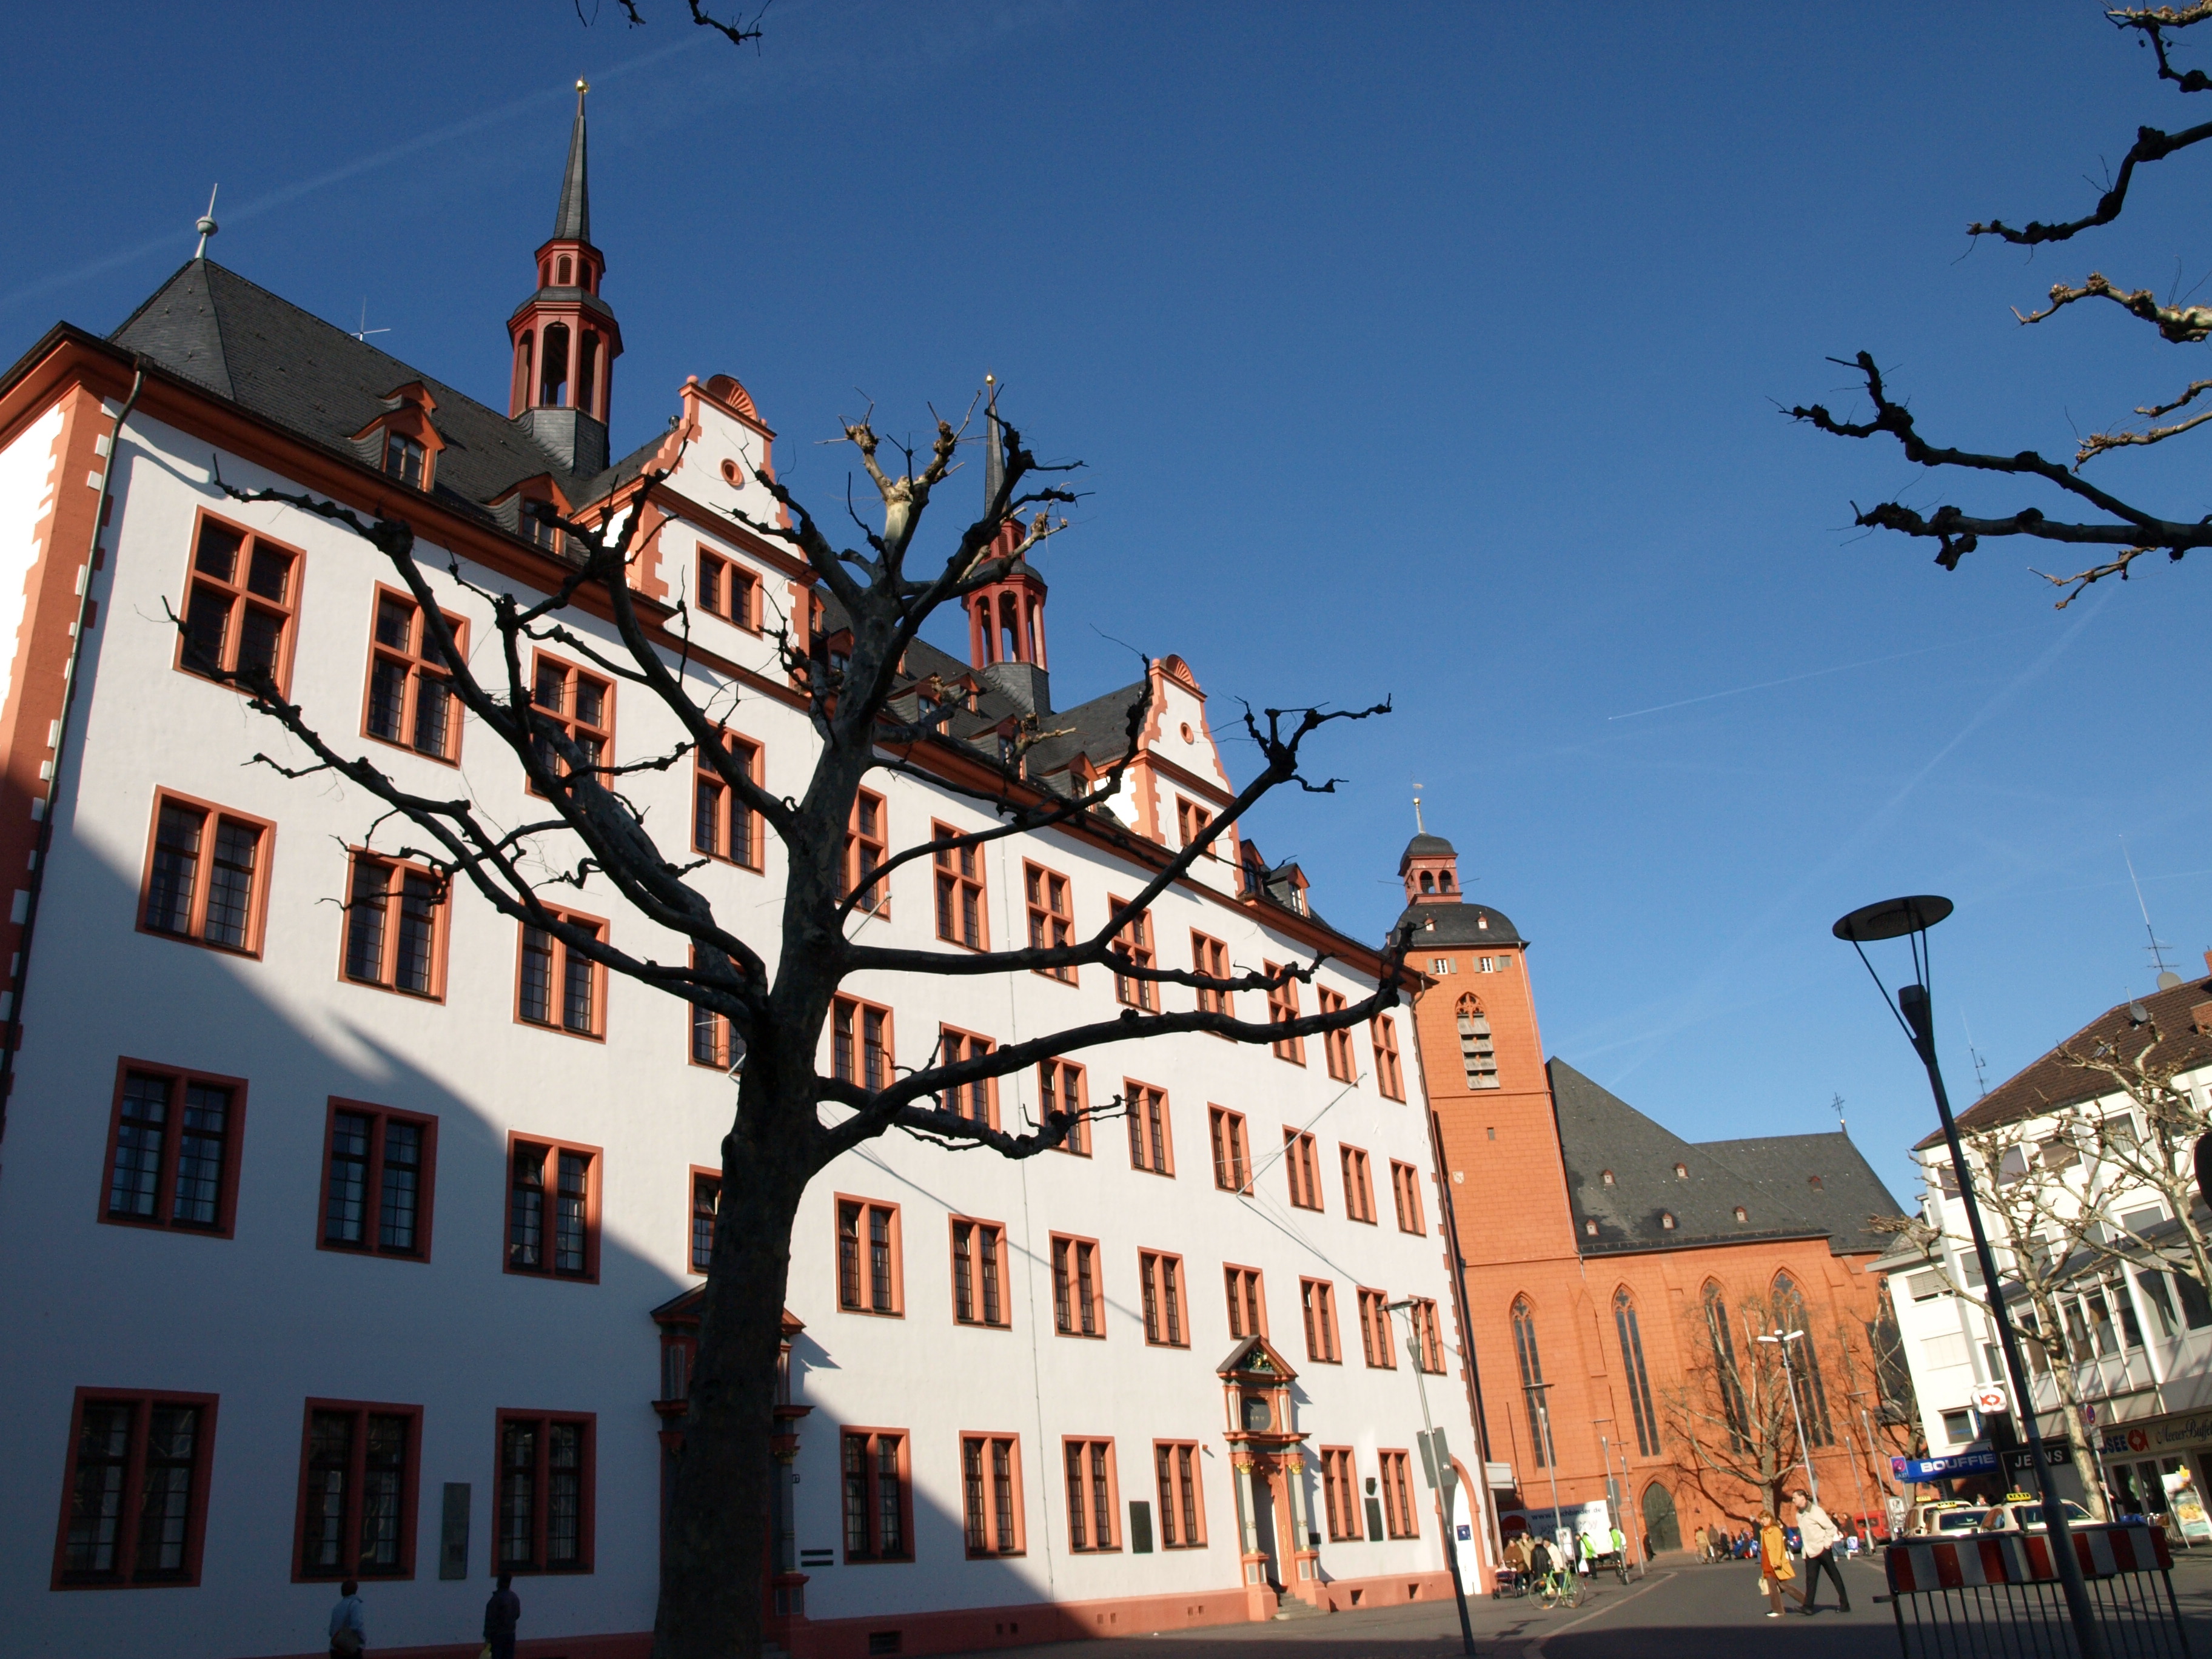 Das Gebäude der alten Universität in Mainz nach Wiederherstellung der Dachtürme.